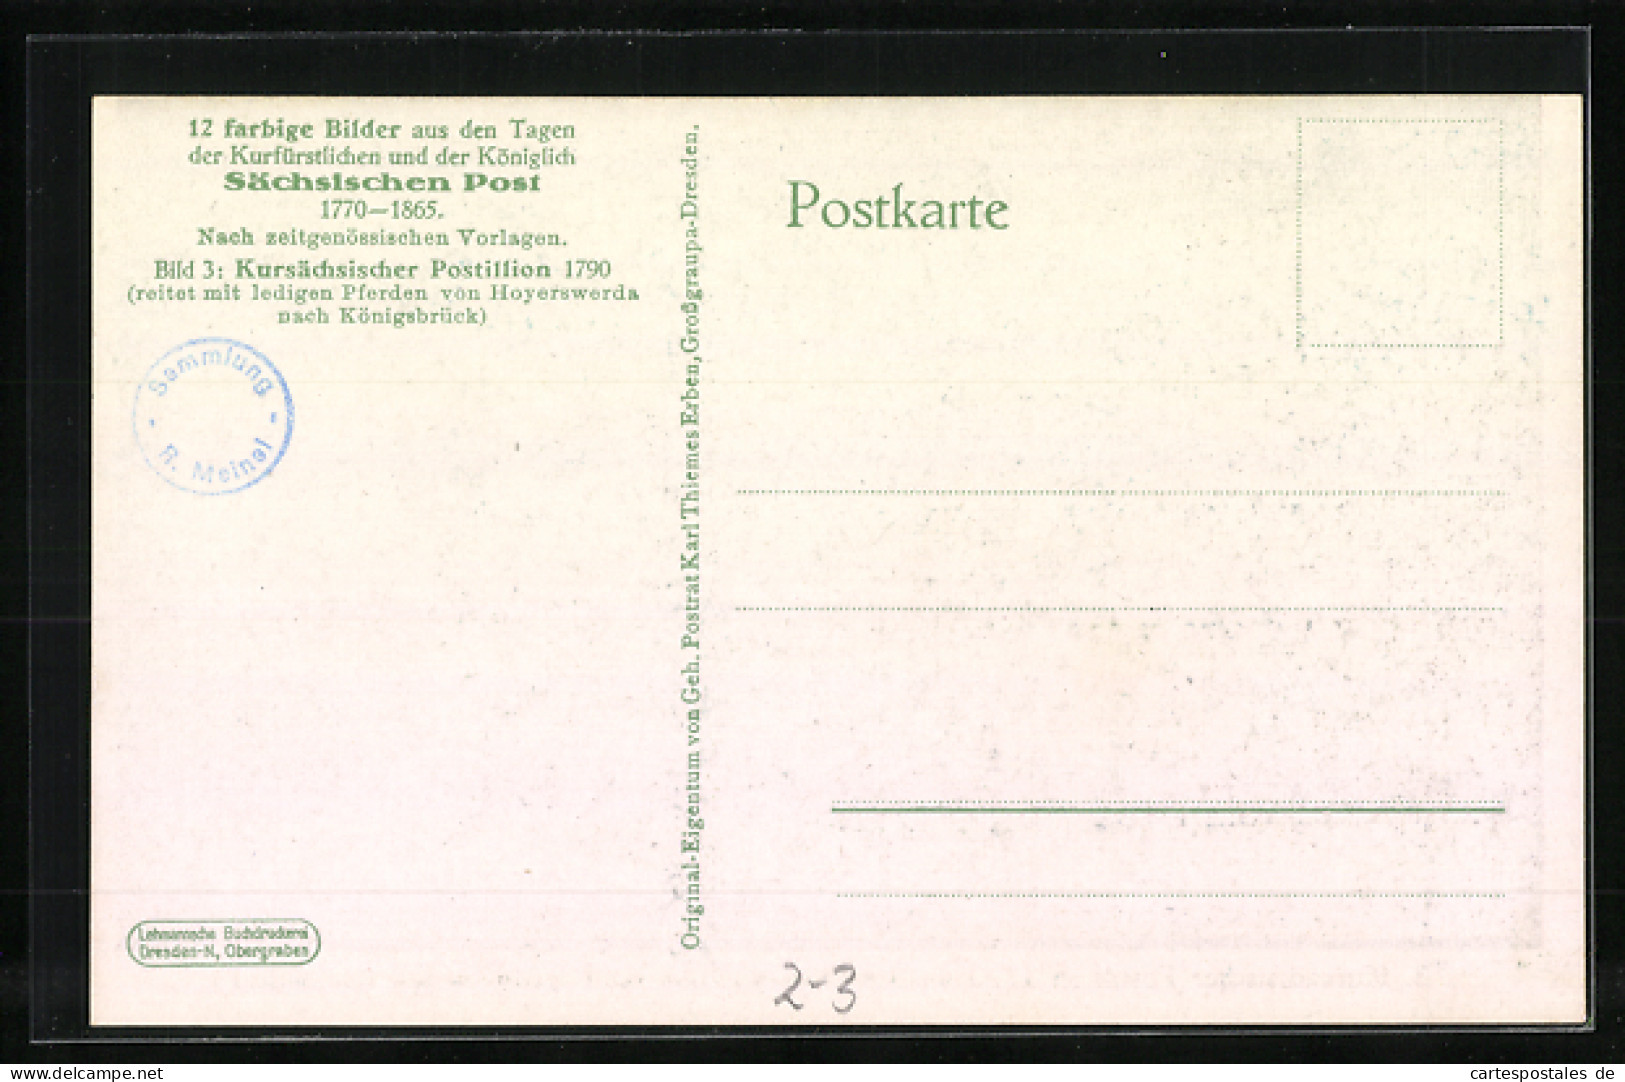 Künstler-AK Kursächsischer Postillon 1790, Reitet Mit Ledigen Pferden Von Hoyerswerda Nach Königsbrück  - Postal Services